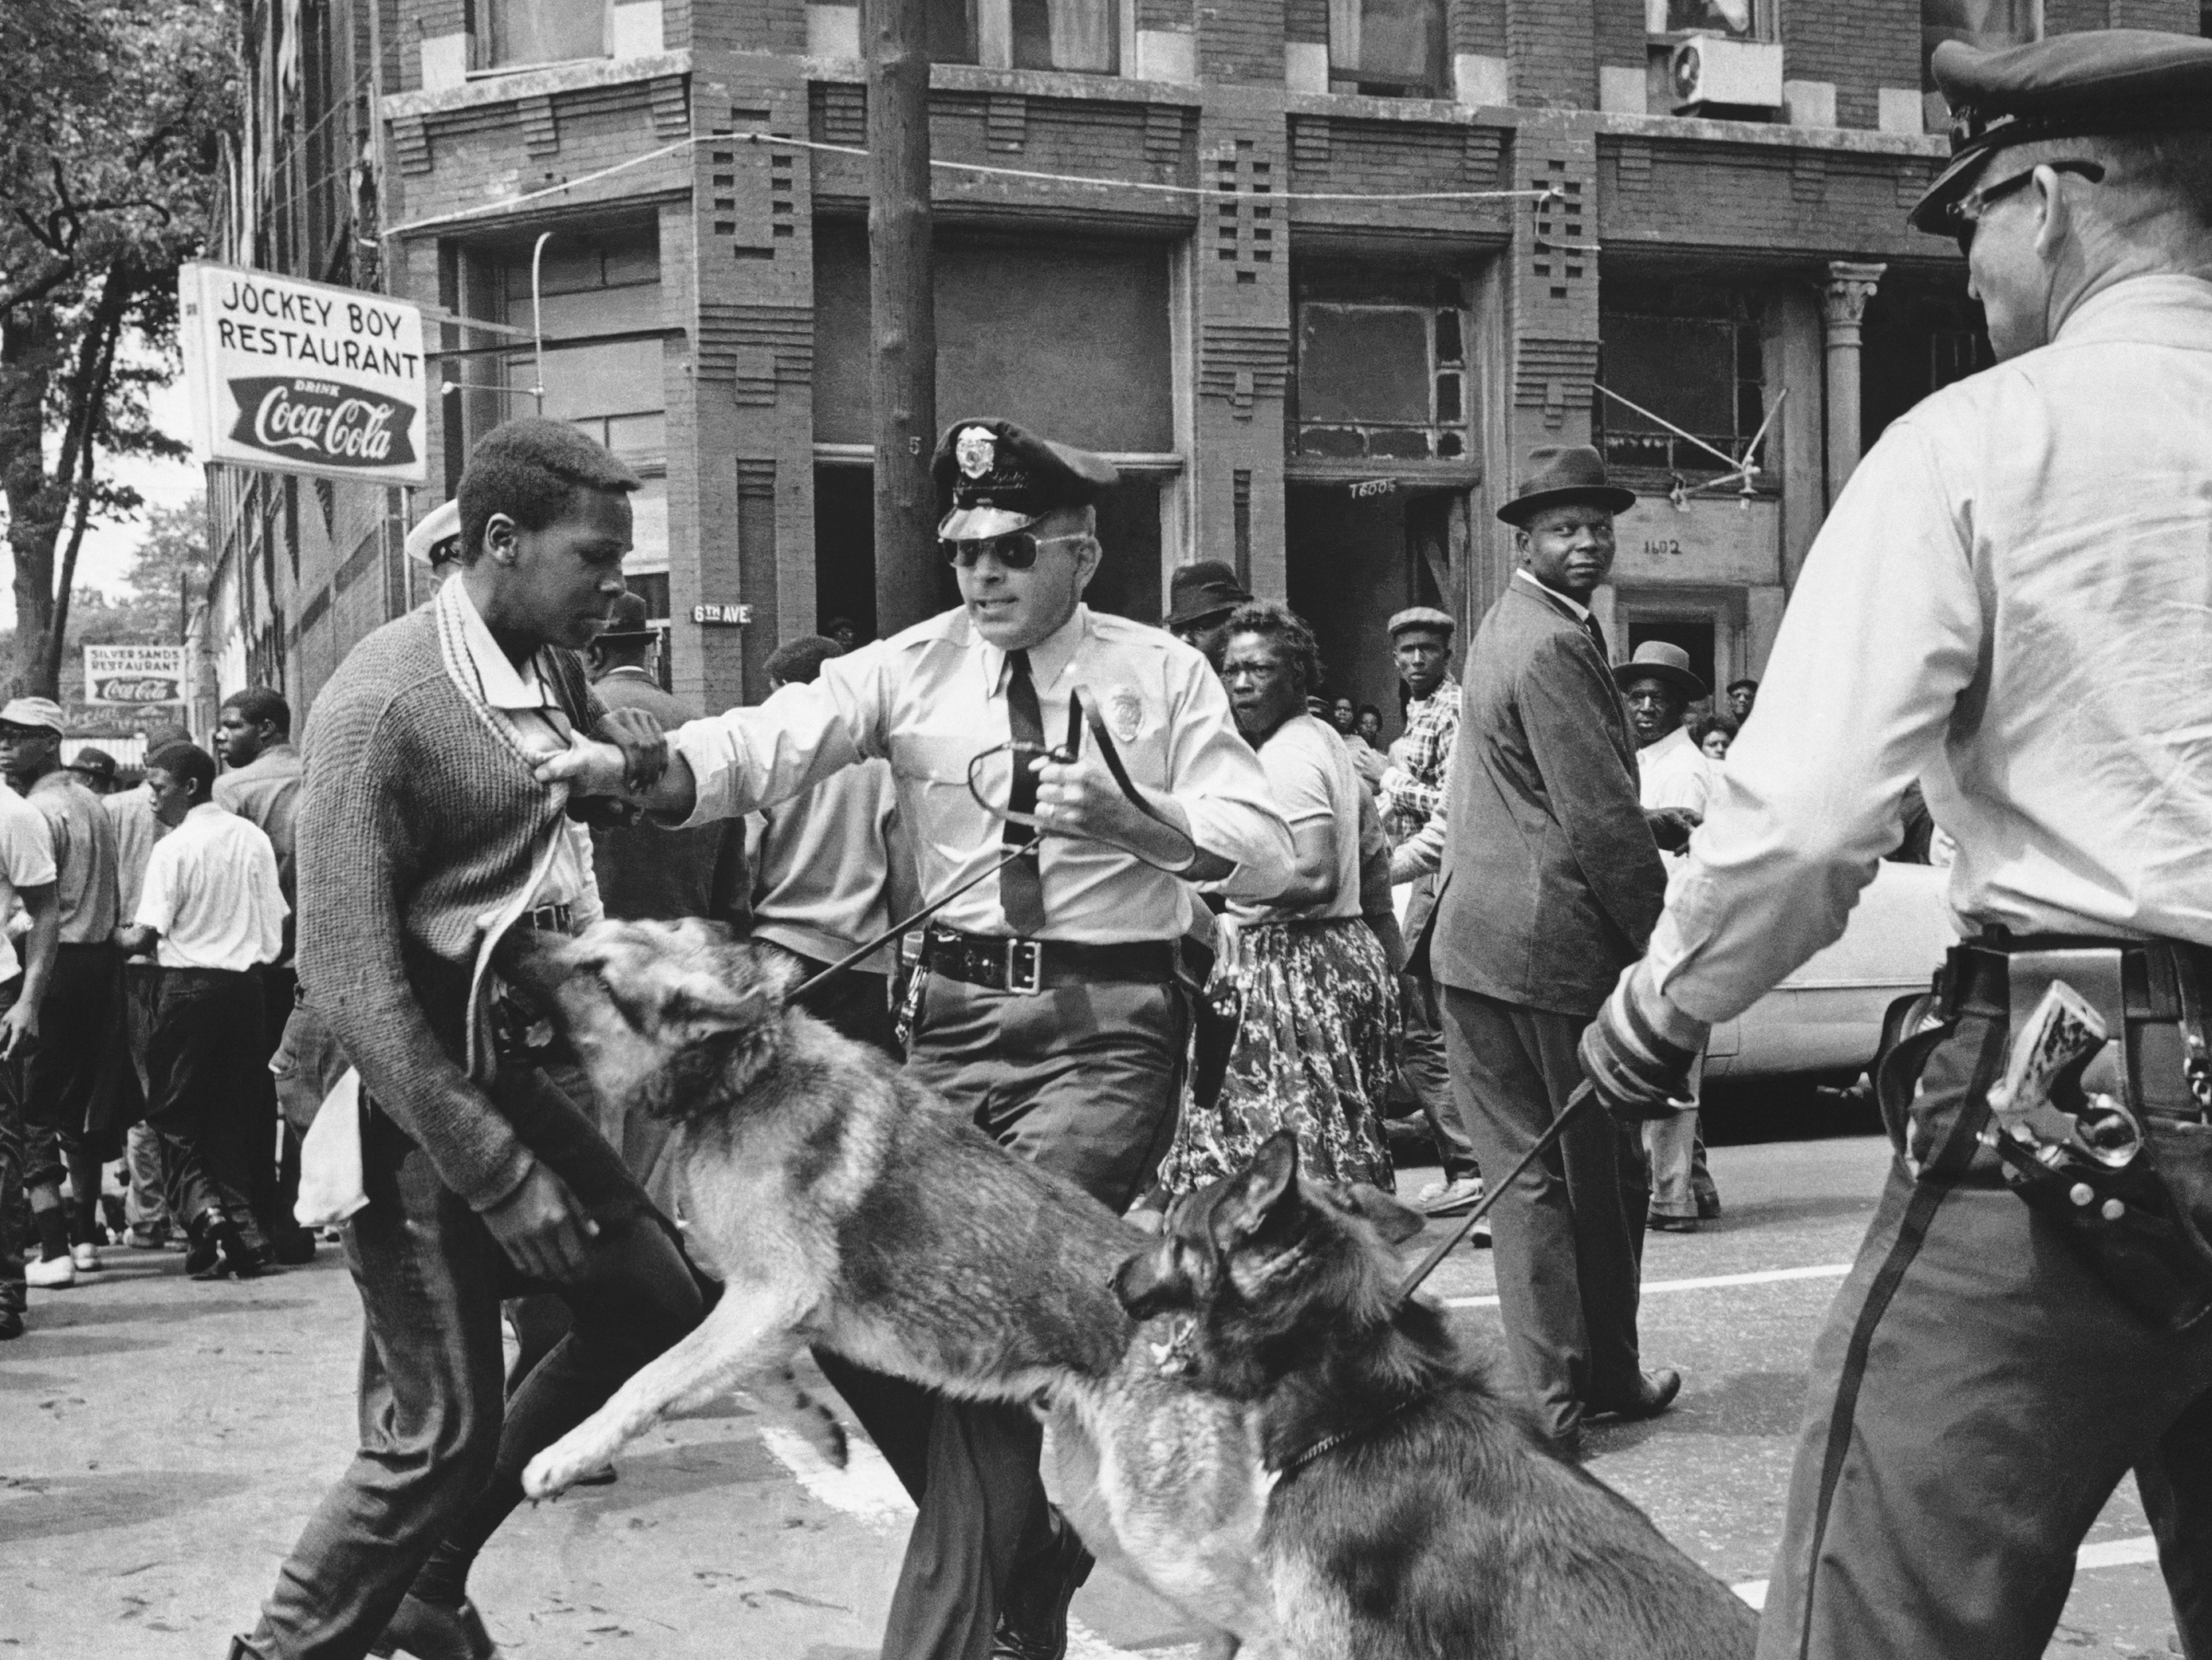 Le 3 mai 1963 - Les événements de Birmingham et leur impact sur la lutte pour les droits civiques aux États-Unis